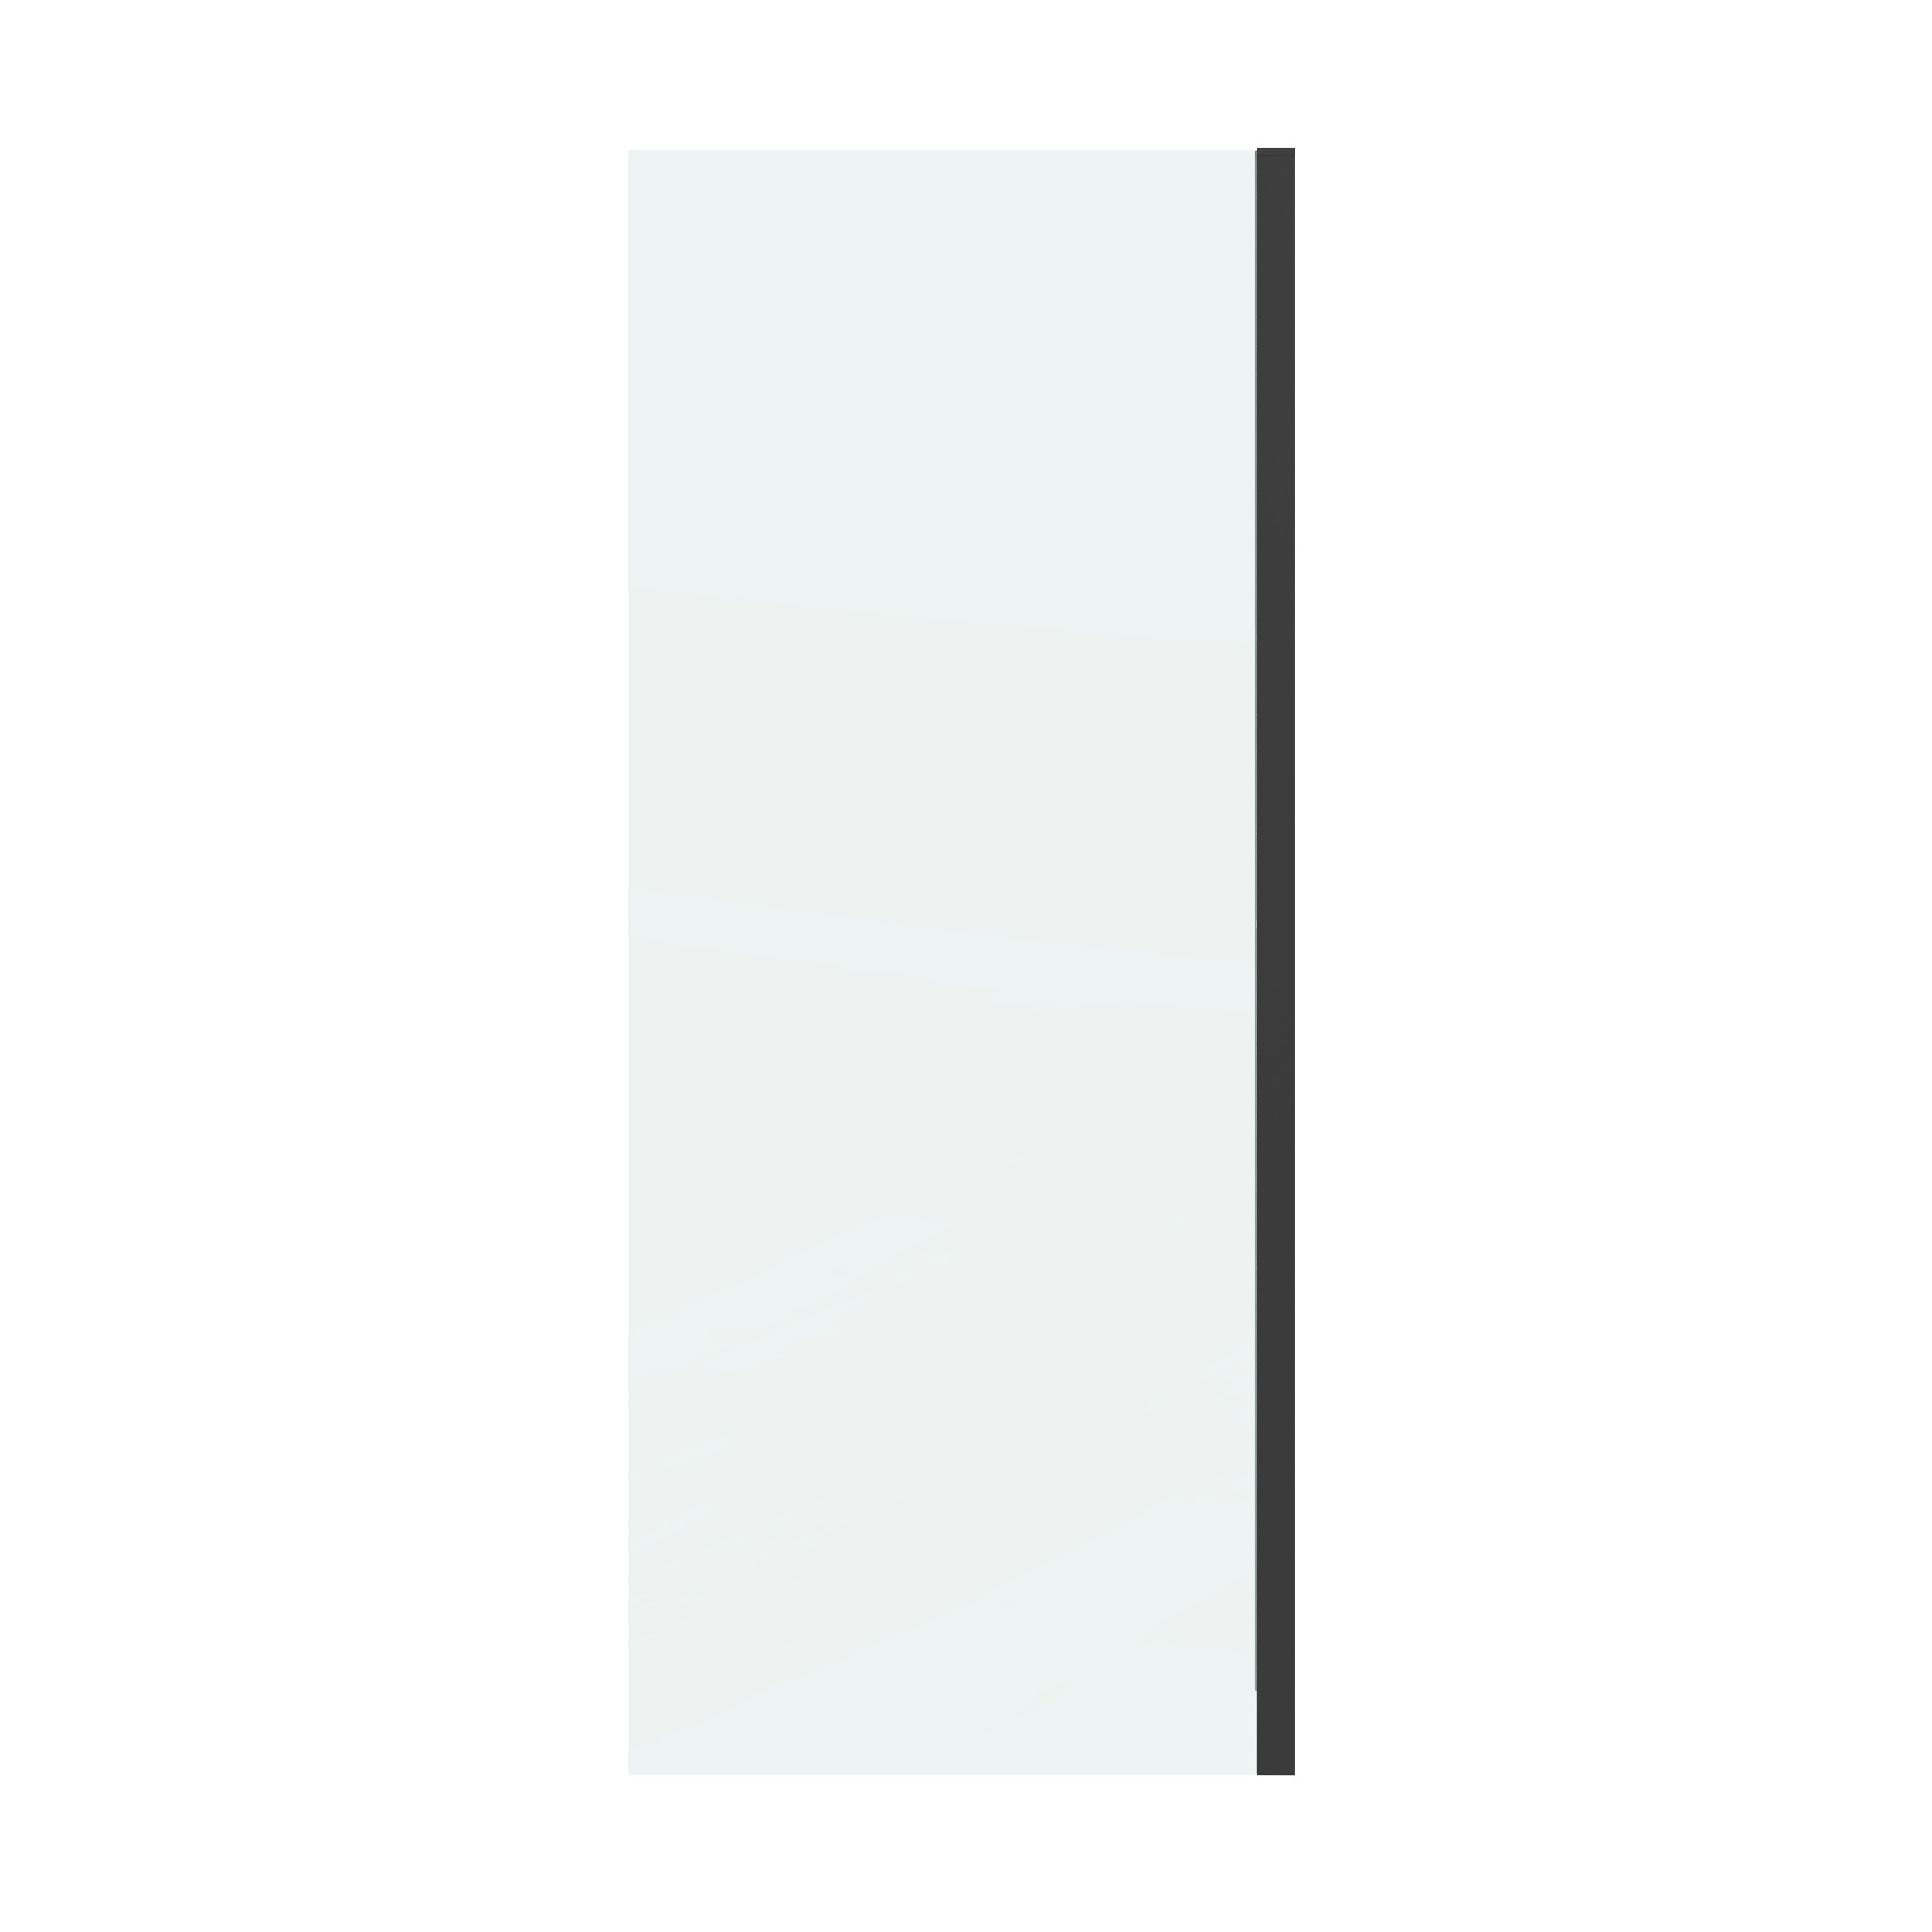 Боковая стенка Grossman Classic 70x195 200.K33.04.70.21.00 стекло прозрачное, профиль черный матовый - фото 1